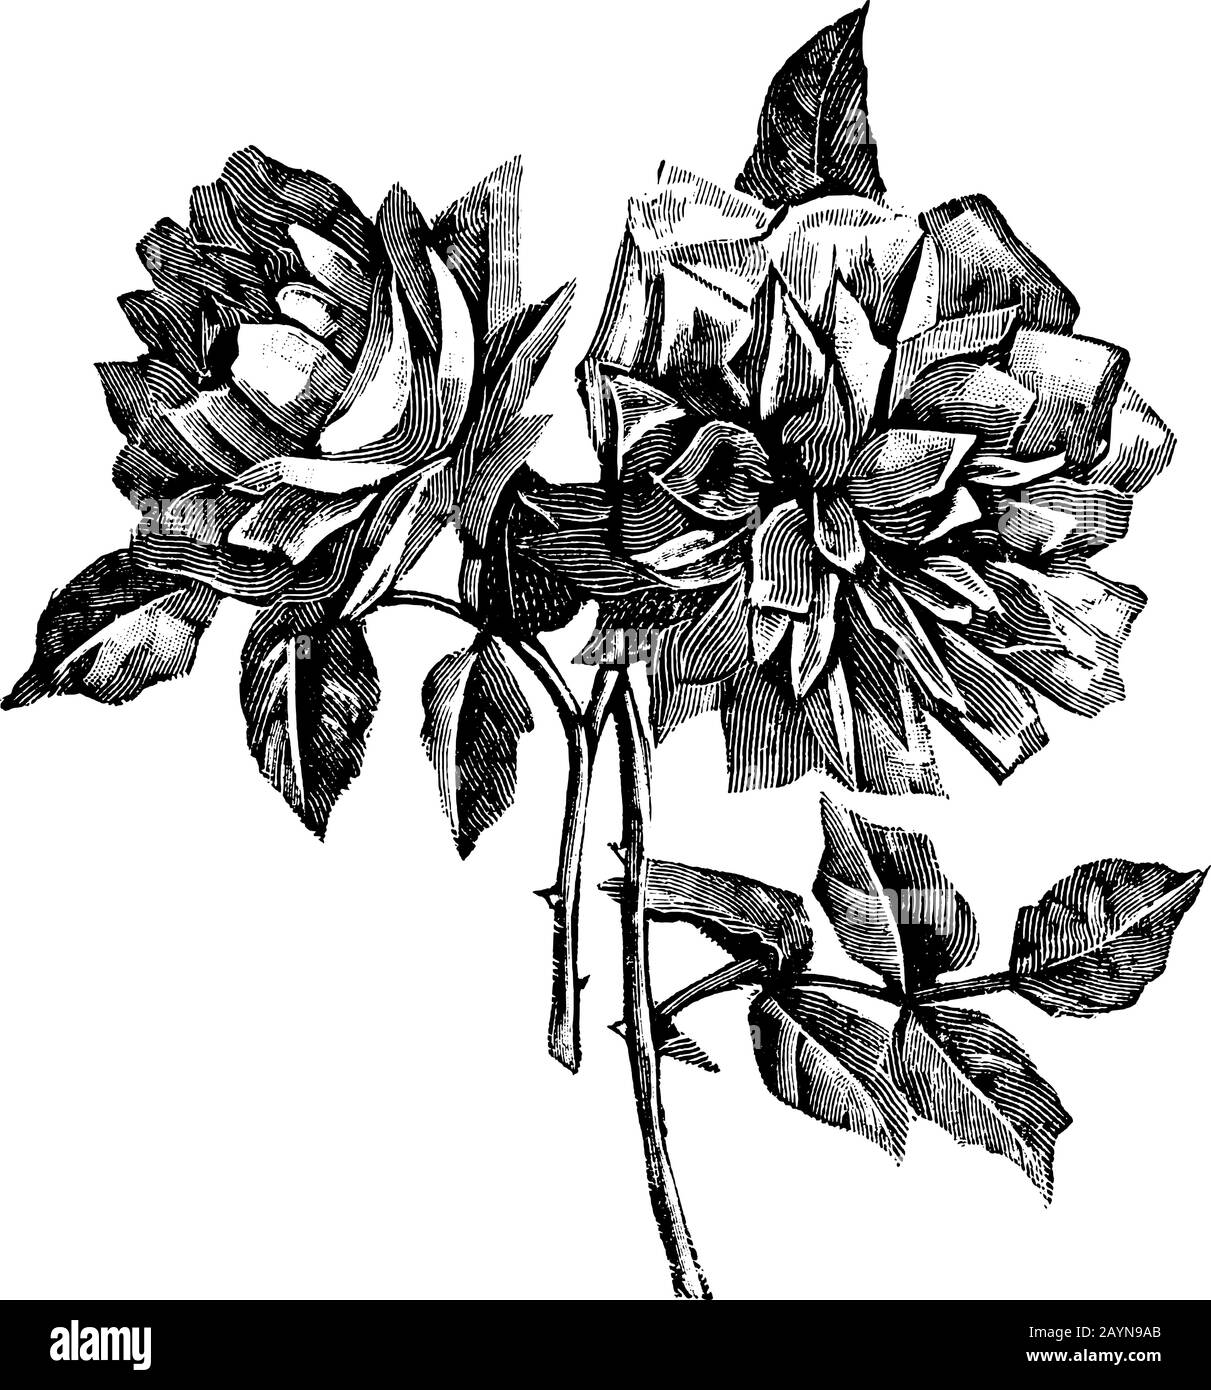 Antica linea d'arte vintage illustrazione, incisione o disegno a mano di bella rosa fiore. Illustrazione Vettoriale